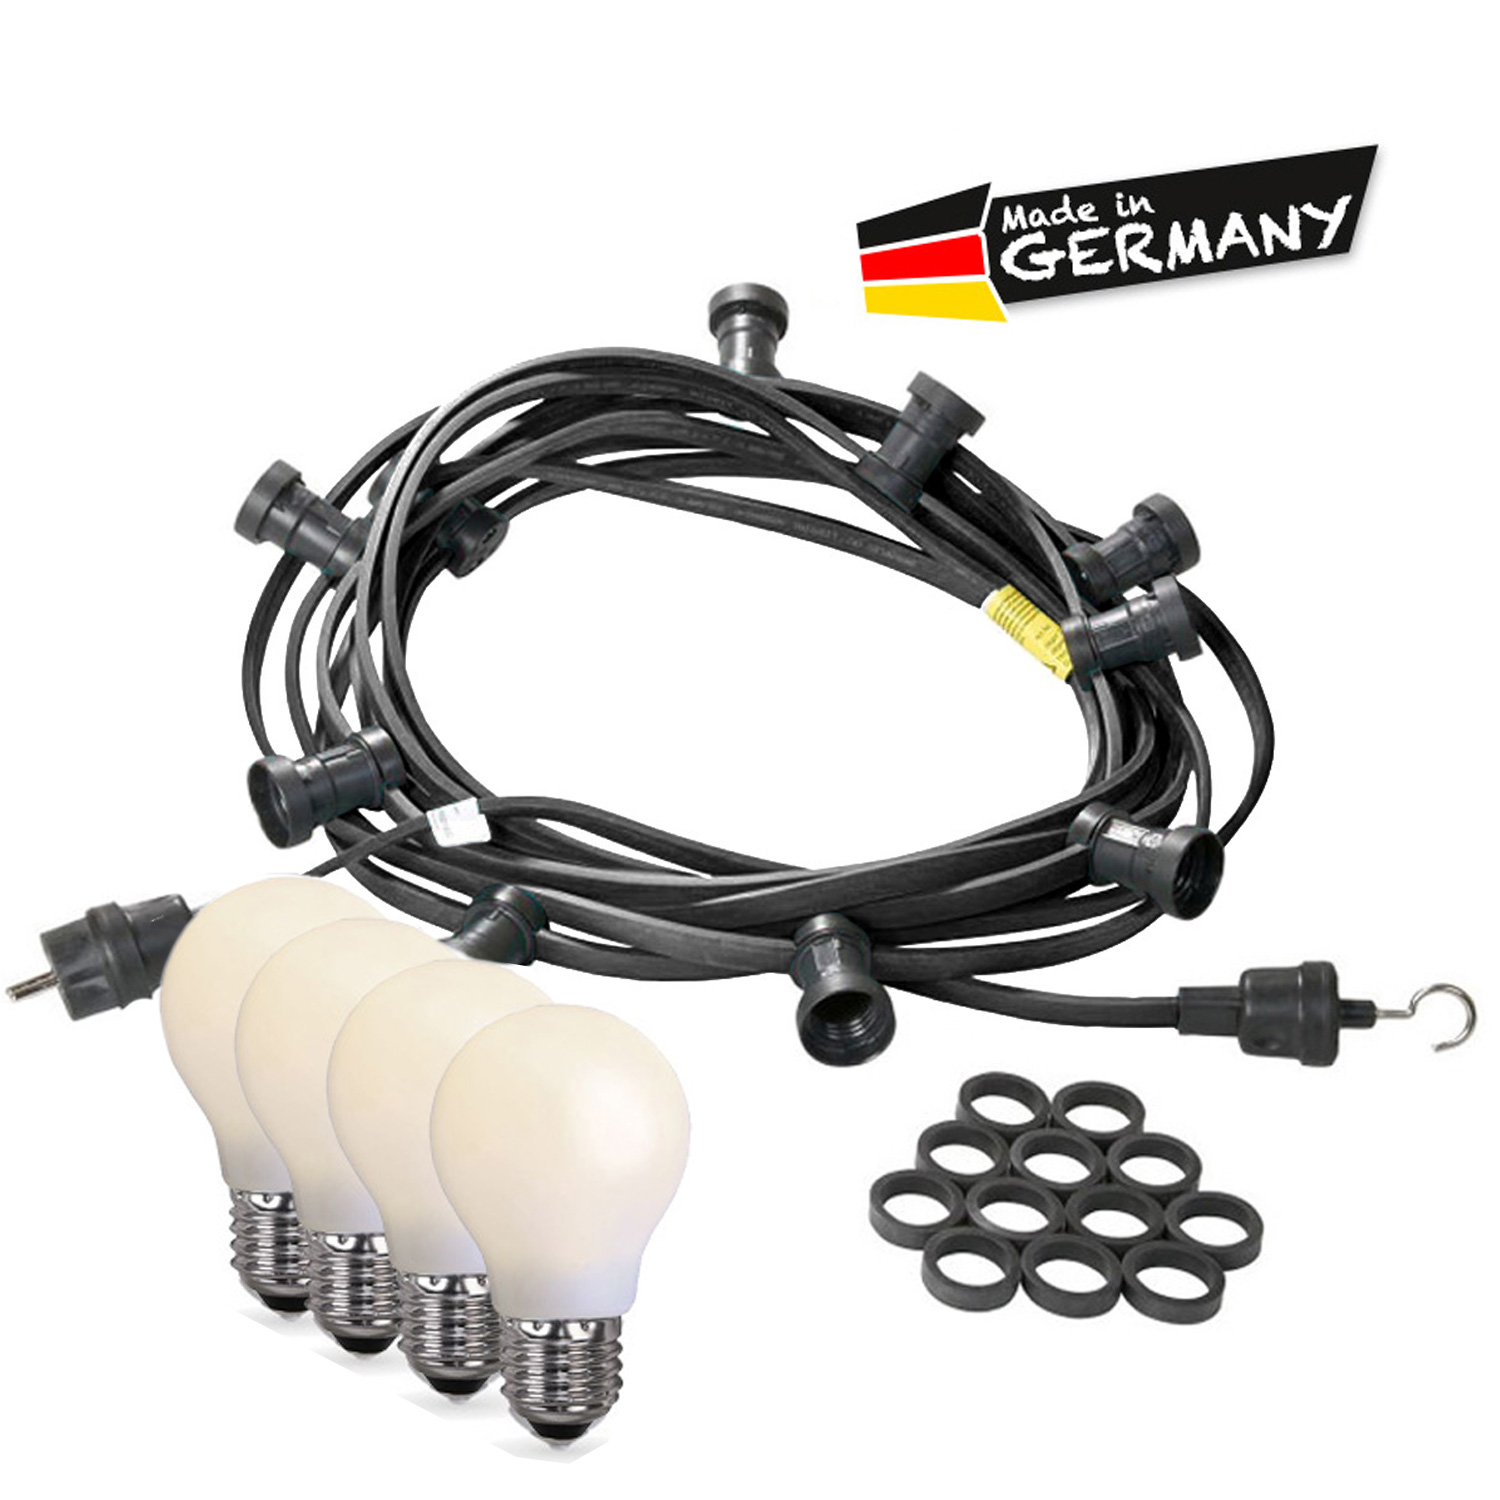 Illu-/Partylichterkette 10m - Außen - Made in Germany - 20 bruchfeste opale LED Tropfenlampen